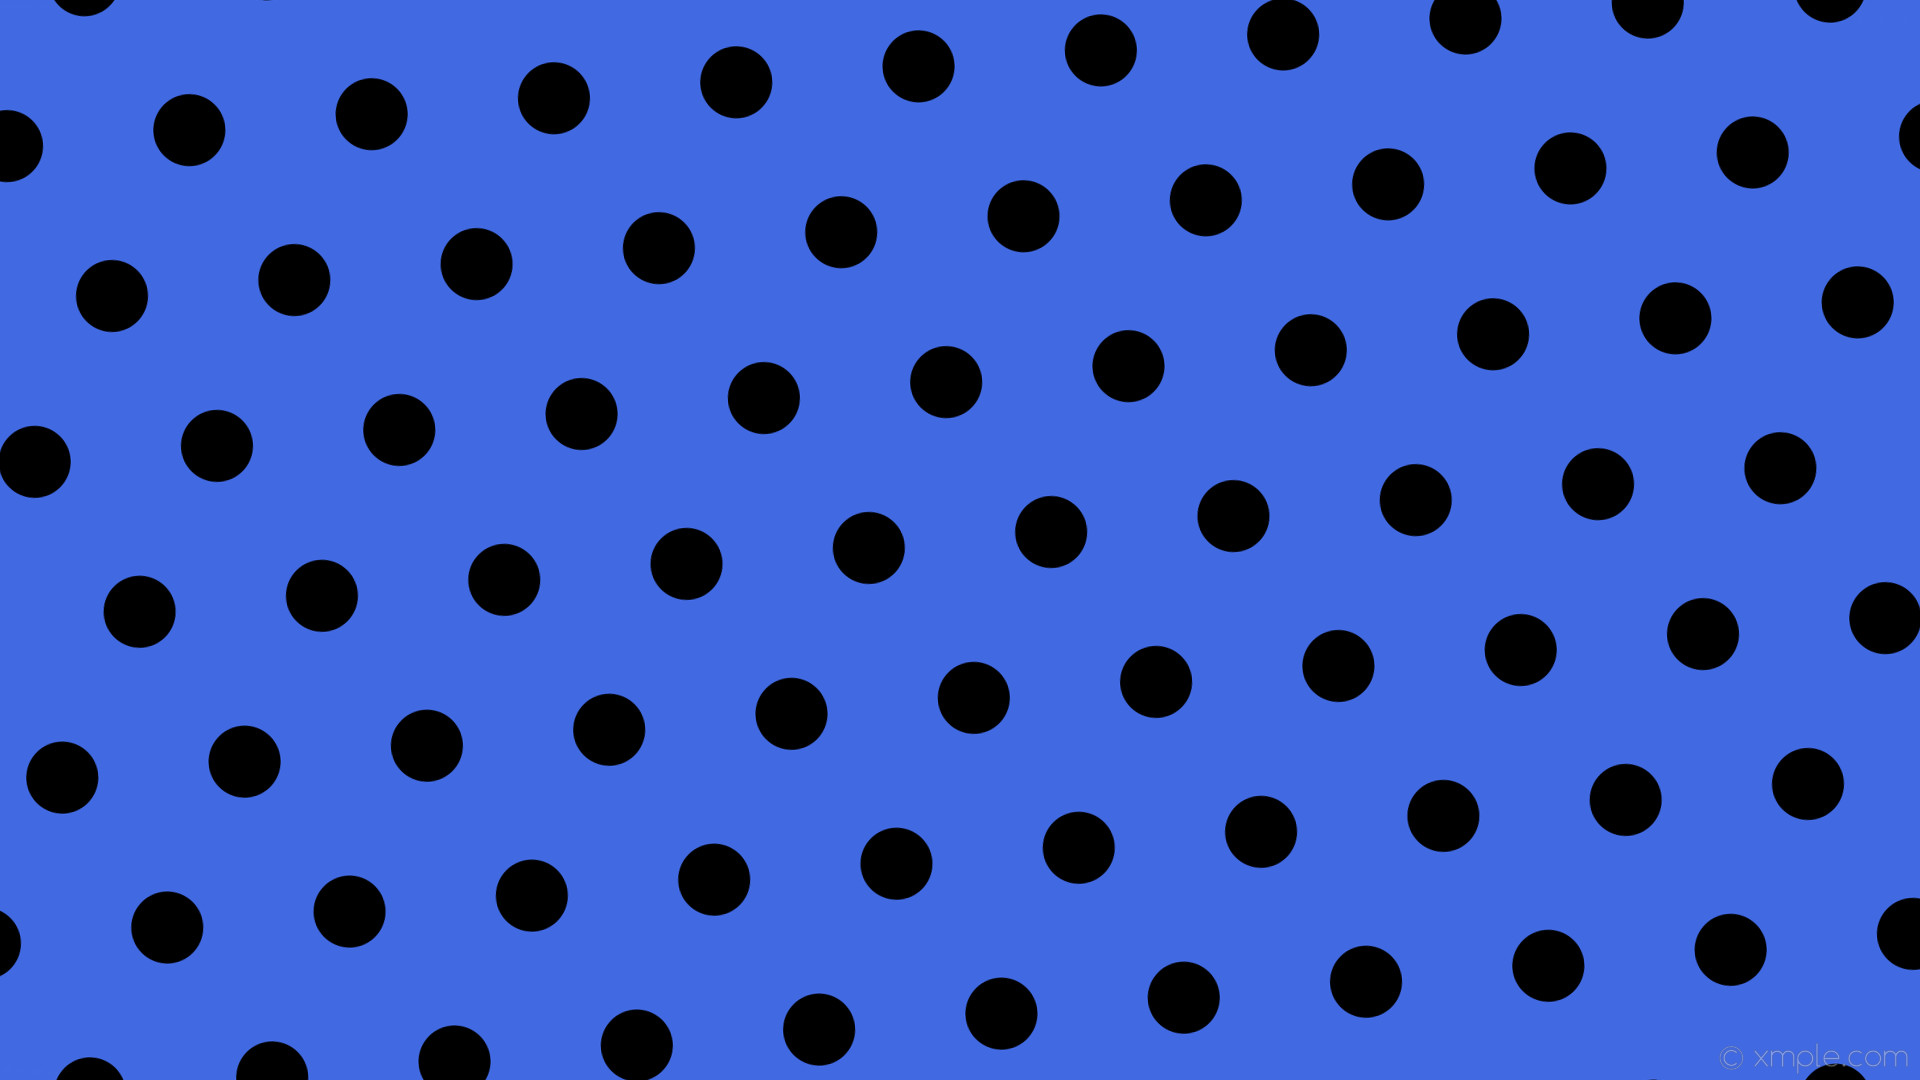 wallpaper blue polka dots black hexagon royal blue #4169e1 #000000 diagonal  5Â° 72px